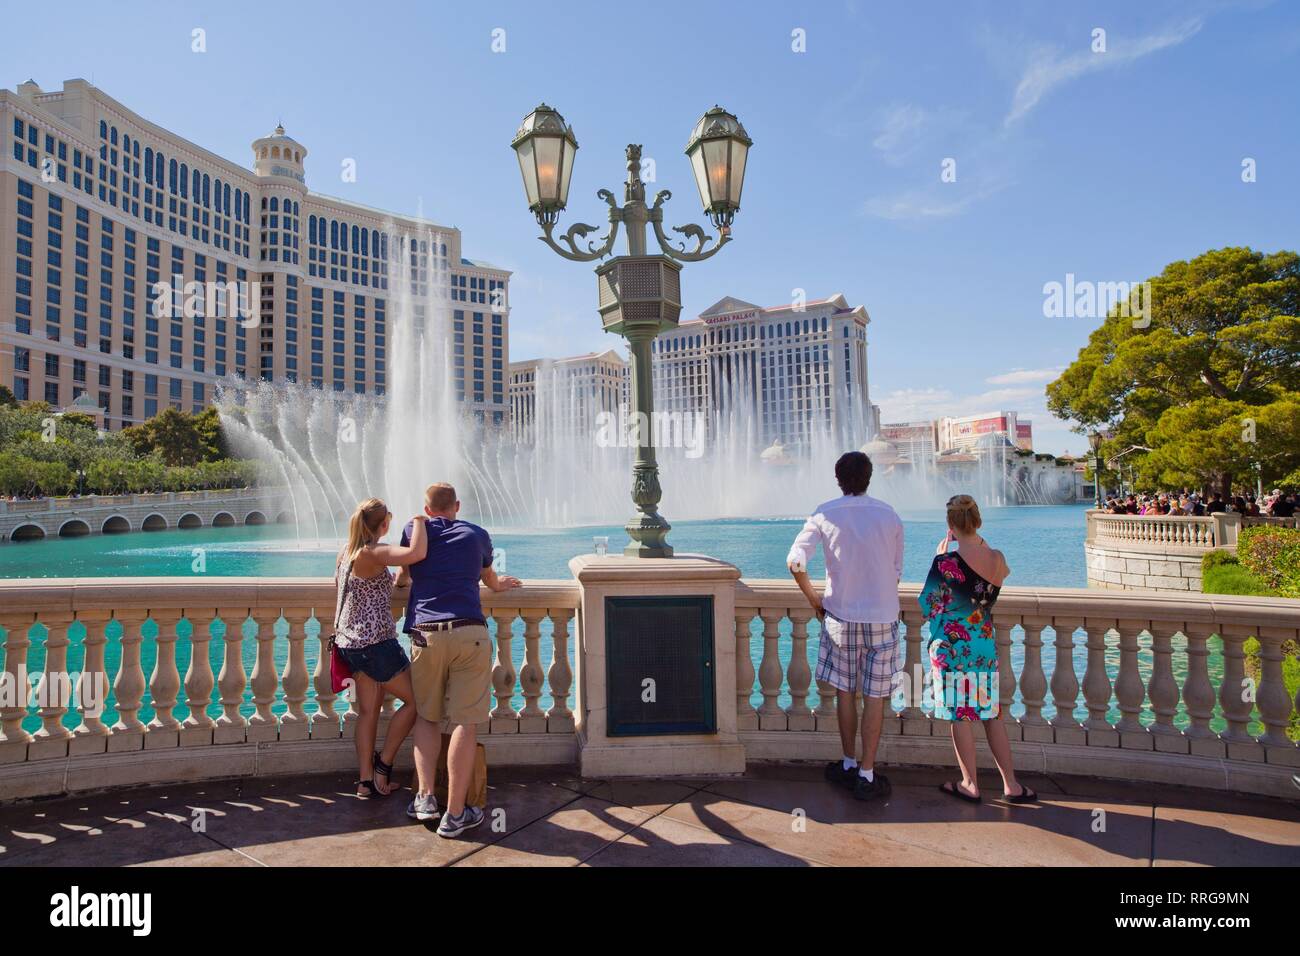 Le Venetian Resort Hotel Casino, Las Vegas, Nevada, États-Unis d'Amérique, Amérique du Nord Banque D'Images